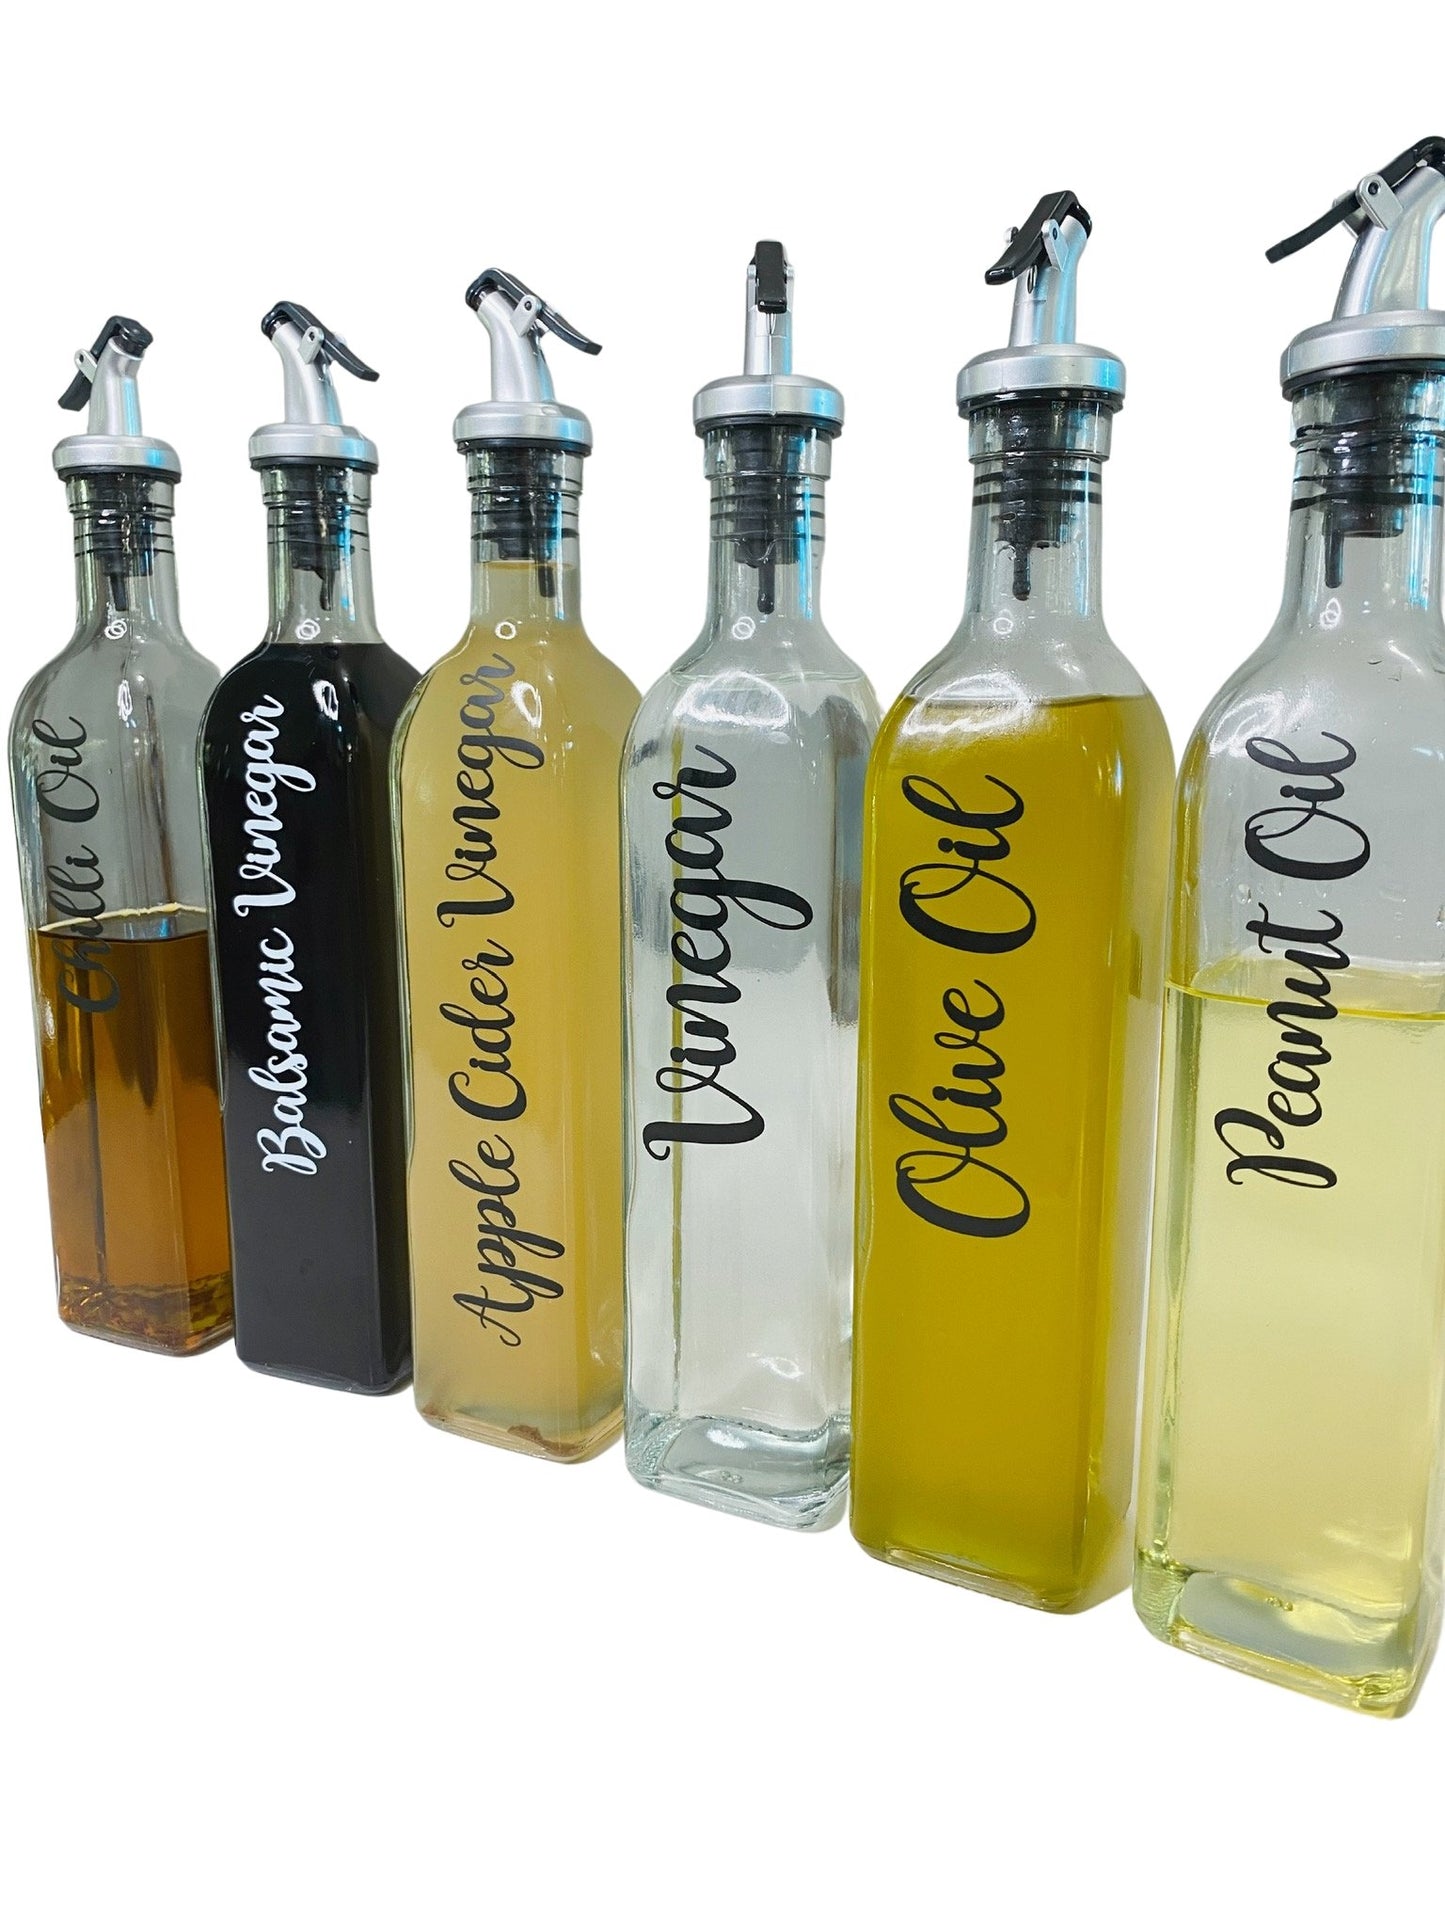 Oil & Vinegar Glass Bottle with Pourer - Organisation Station AU